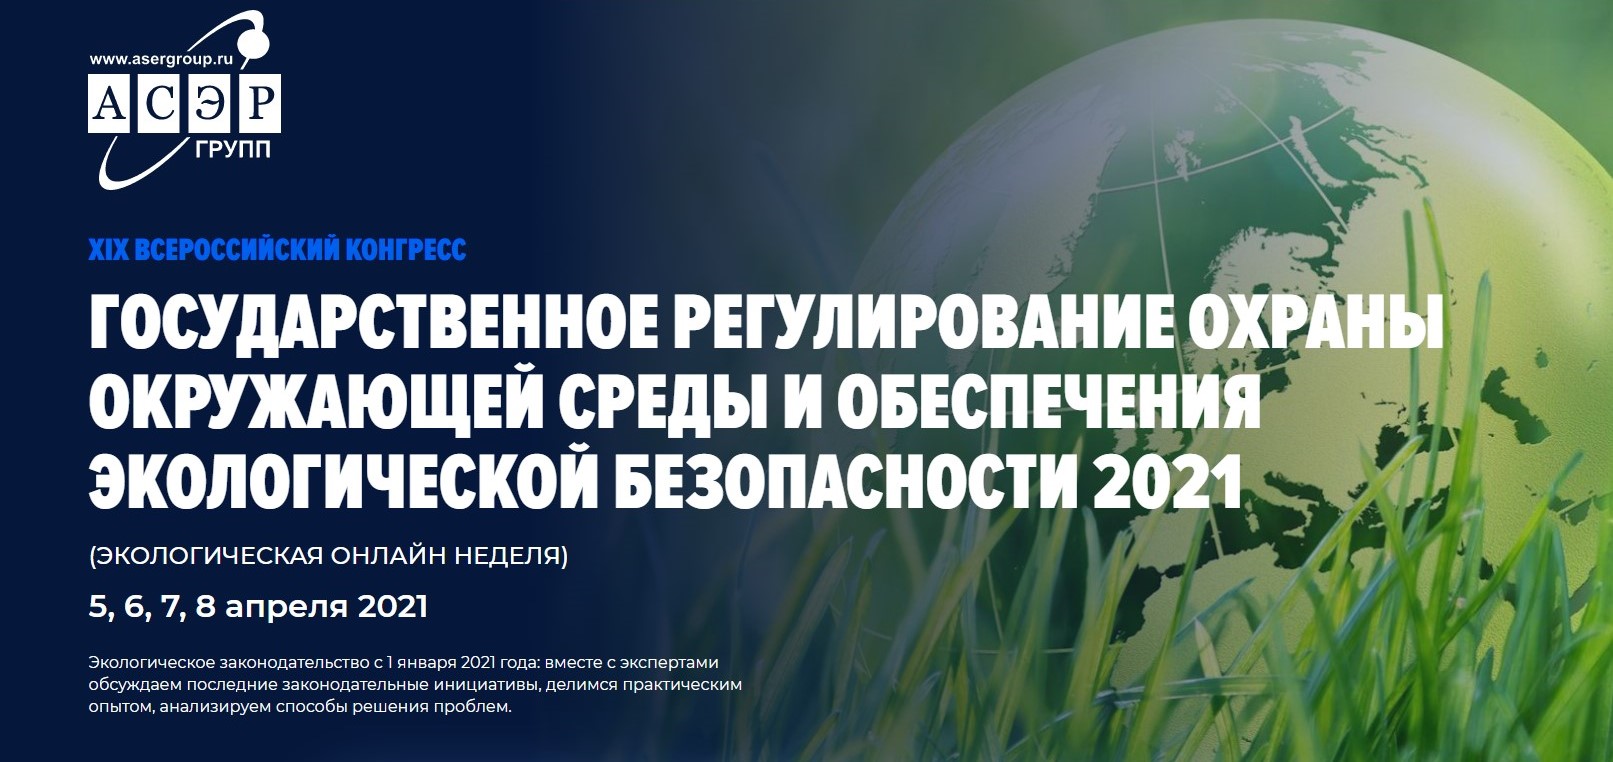 XIX Всероссийский конгресс «Государственное регулирование охраны окружающей среды и обеспечения экологической безопасности 2021»